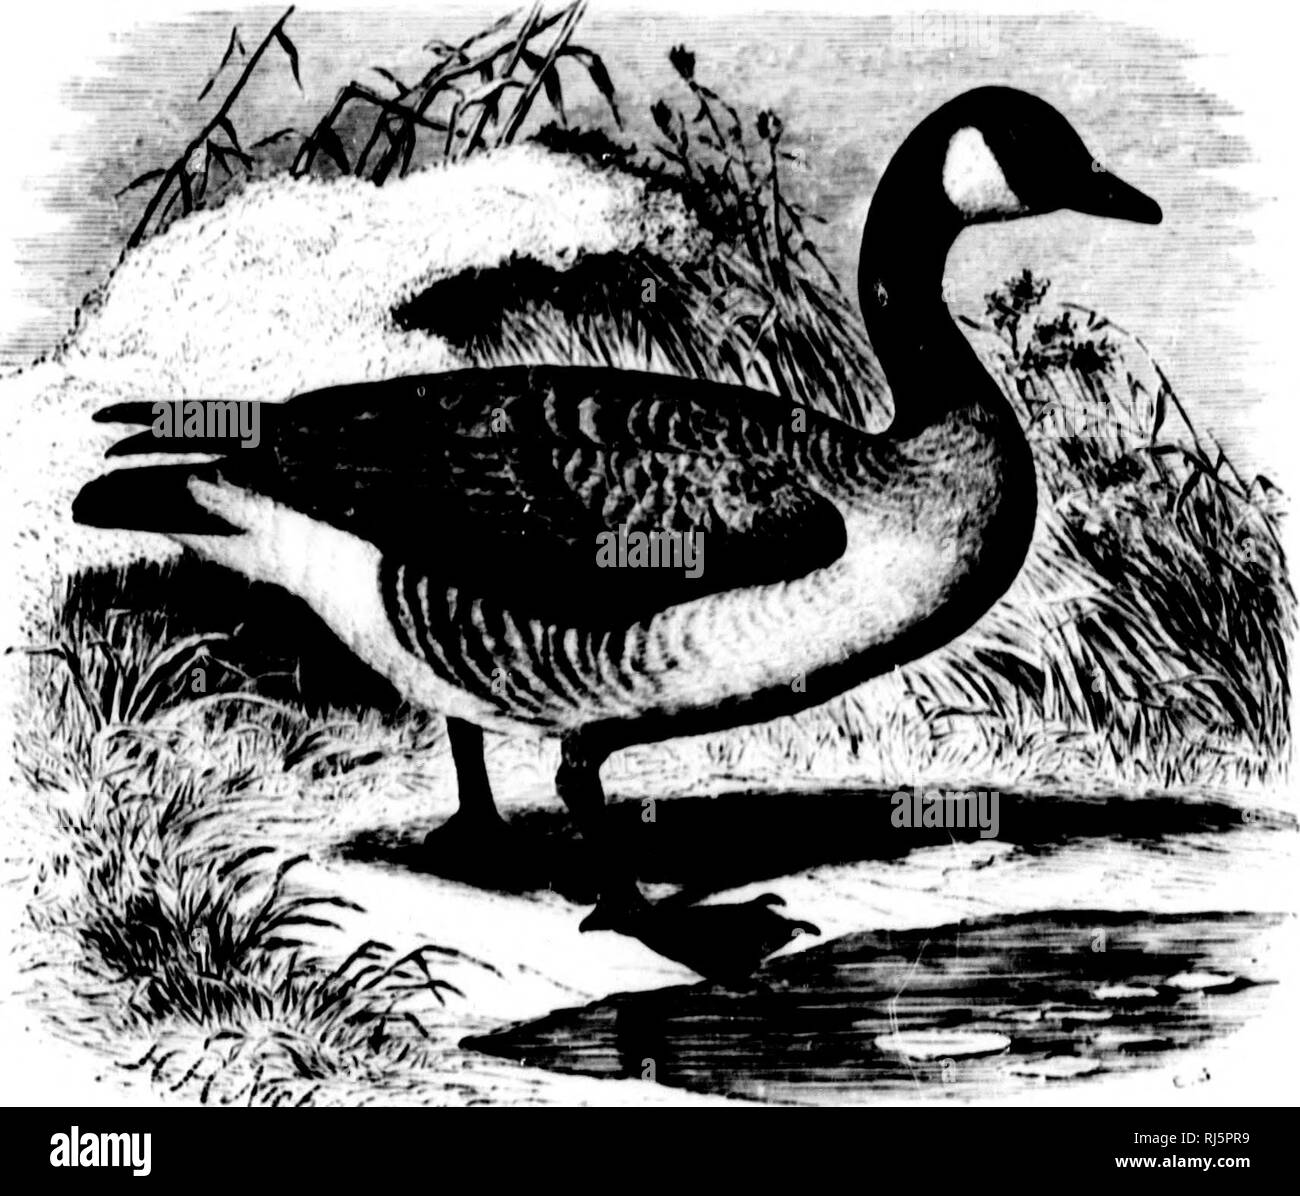 . The water birds of North America [microform]. Birds; Water-birds; Oiseaux; Oiseaux aquatiques. 454 I,.Mi;i,LII!t)STKAL SWIMMKIIS - AVSKUIX Till' t'KK^ (if tluM H|M'ciÂ«'8, ill hIiuim' anil K*'Â»i'ral iip|M-uriui(H&gt;, urc iiiuliNtiii({ui.sliulili&gt; fruiii tliDsc lit till' Snow (iuuHu. 'Vlwy un* uf a iinifiirni ilull-whiti) culor, iinil nifUMure nbuut '.'.MU by l'.(Ml ini^lifH. (iKM H BERNICLA, Stki'Iikns. fiiniii-li, Stki'IIKN^, (ty|&gt;i', Amii lurniiln, I.inn.). LiUcttfHtniti, l{i:iri|. MvhI. .v. iH.'iU, |i|. ix. (&gt;v, .Inmr Icuenimii, UKciiNr.). LiiicMi-fihiirim, Haiiii&gt;, B.  Stock Photo